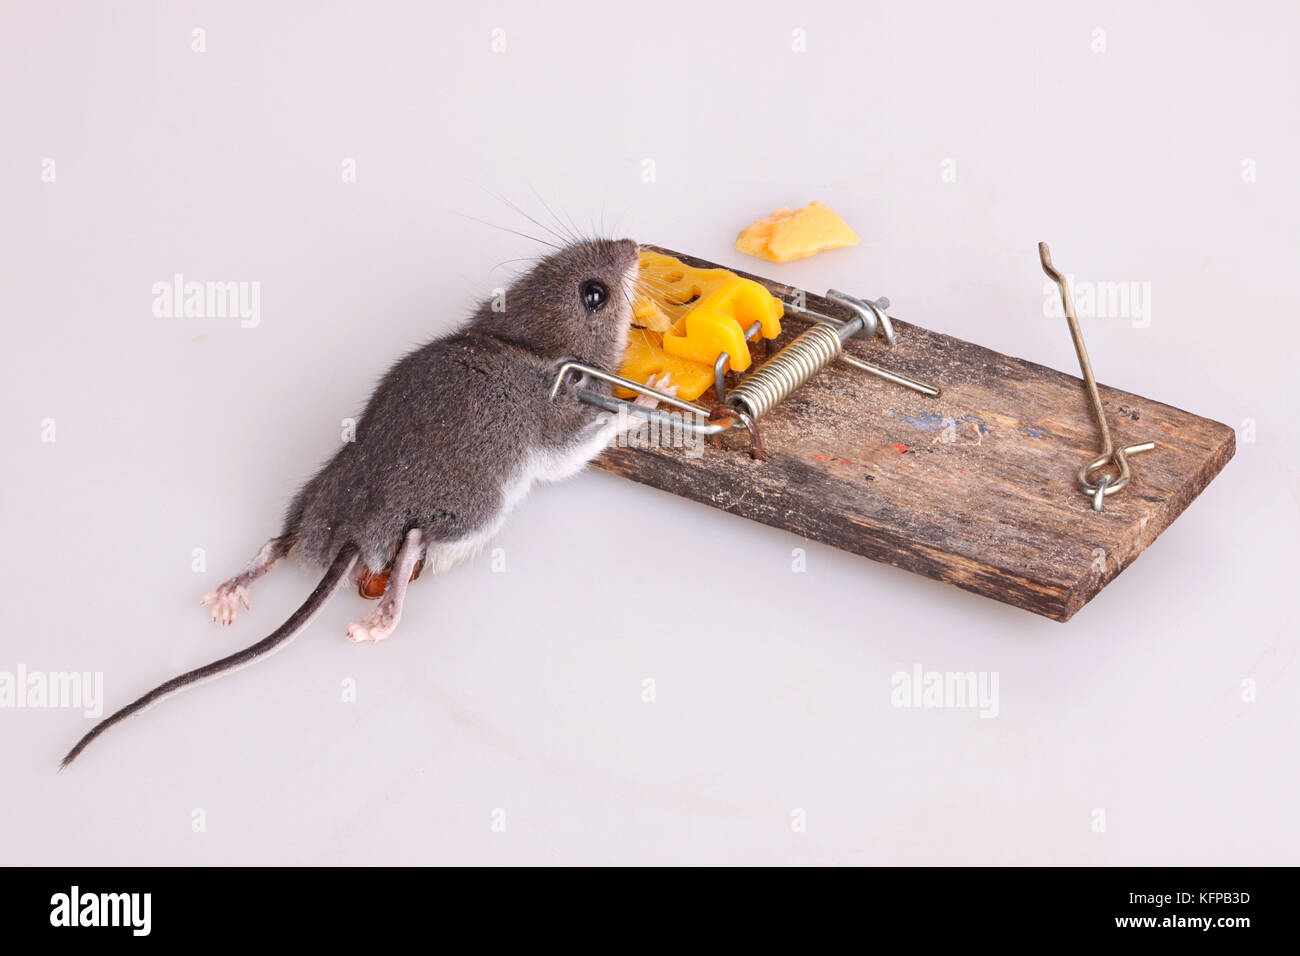 Gemeinsame Hausmaus (Mus musculus) in einer Feder getötet - geladen Bar snap Trap auf weißem Hintergrund Stockfoto